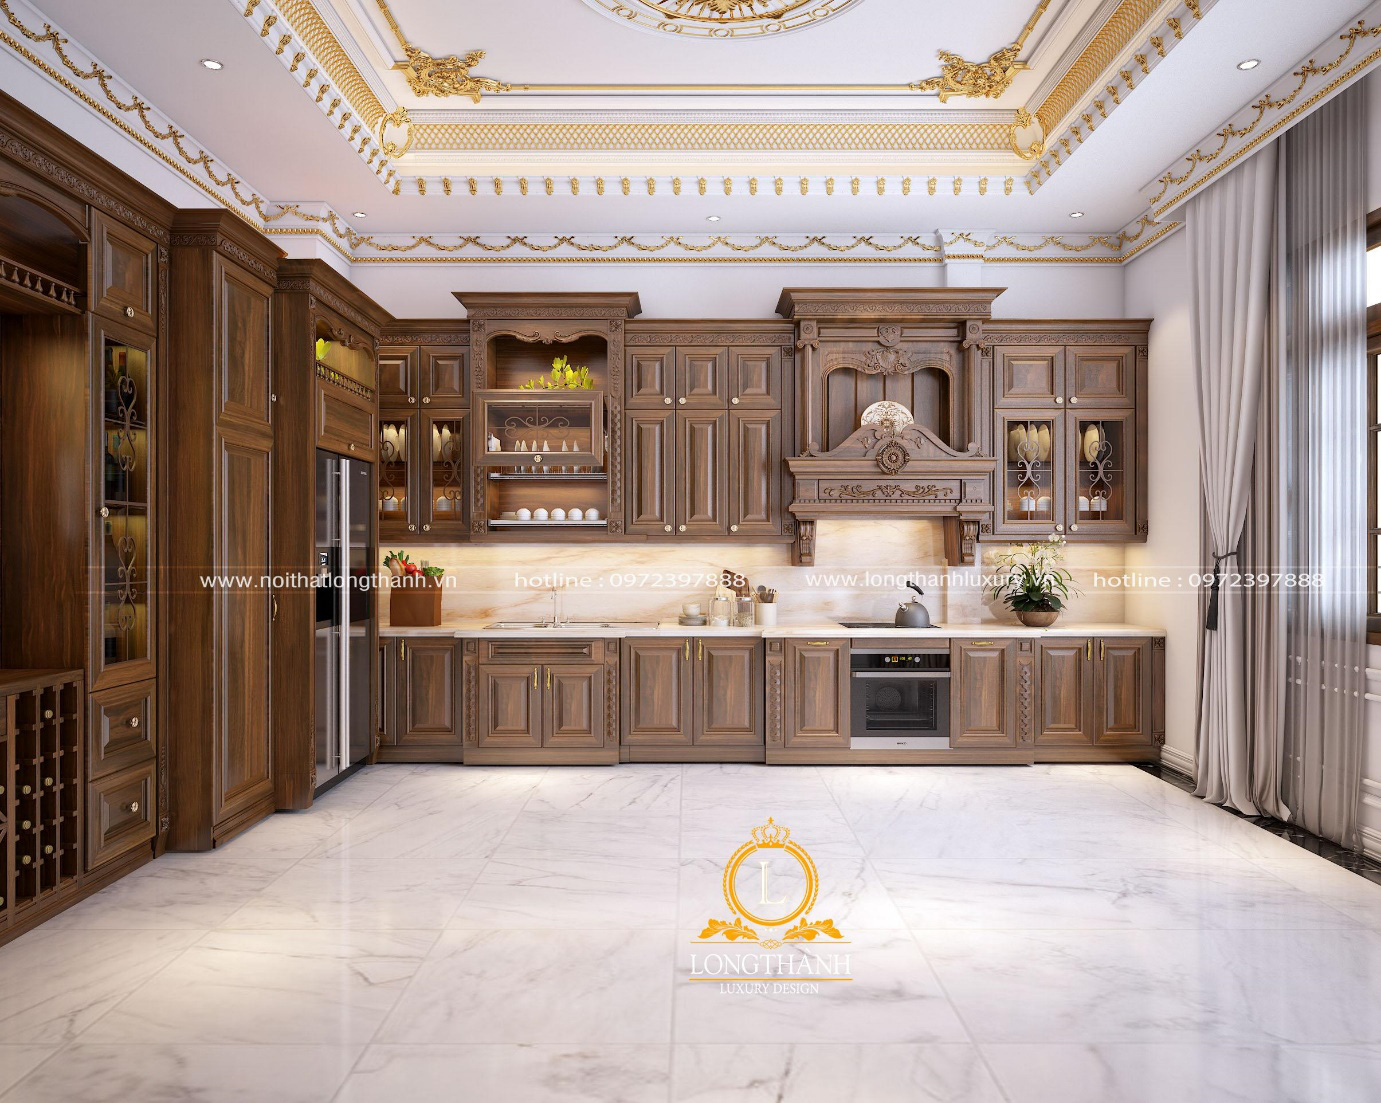 Nội Thất Long Thành – Kiến tạo vẻ đẹp hoàn mỹ cho ngôi nhà của bạn - Ảnh 4.